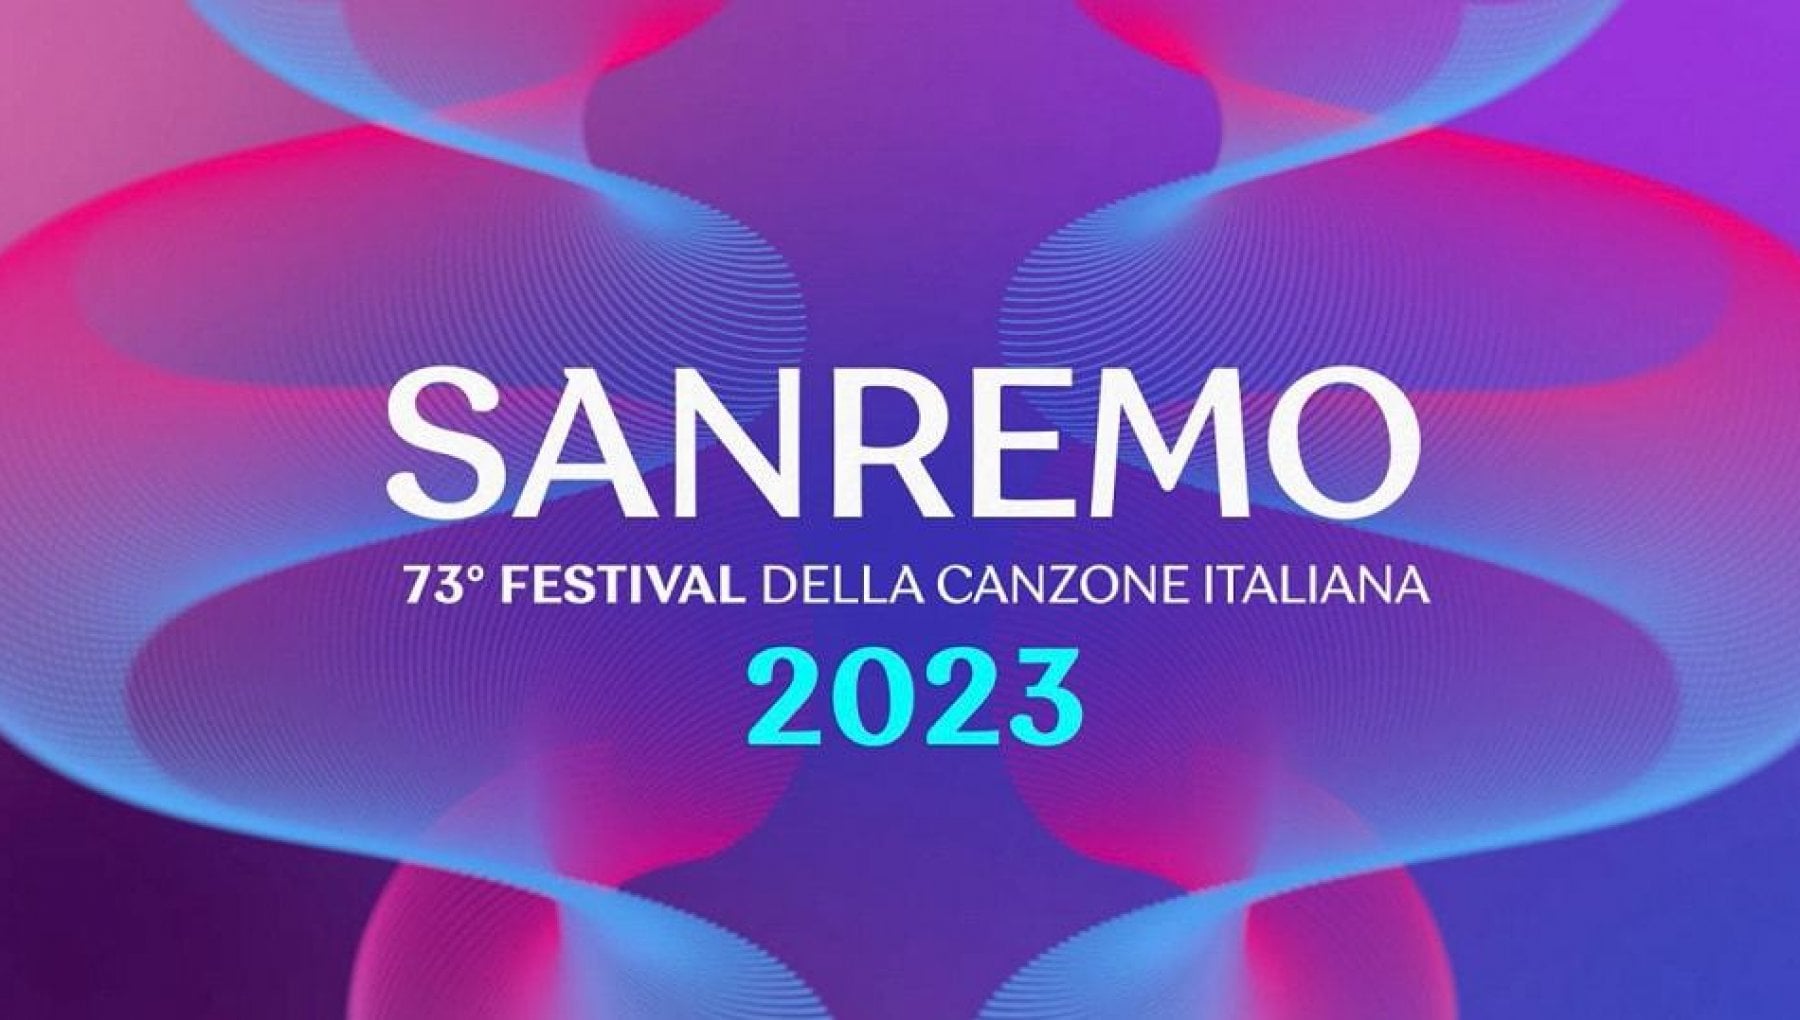 Tutti gli artisti che, quest’anno, si esibiranno al Festival di Sanremo saranno ospiti di Radio Kiss Kiss per le interviste ufficiali, in diretta dal nuovissimo Virgo Village Sanremo, a pochi passi dall’Ariston.